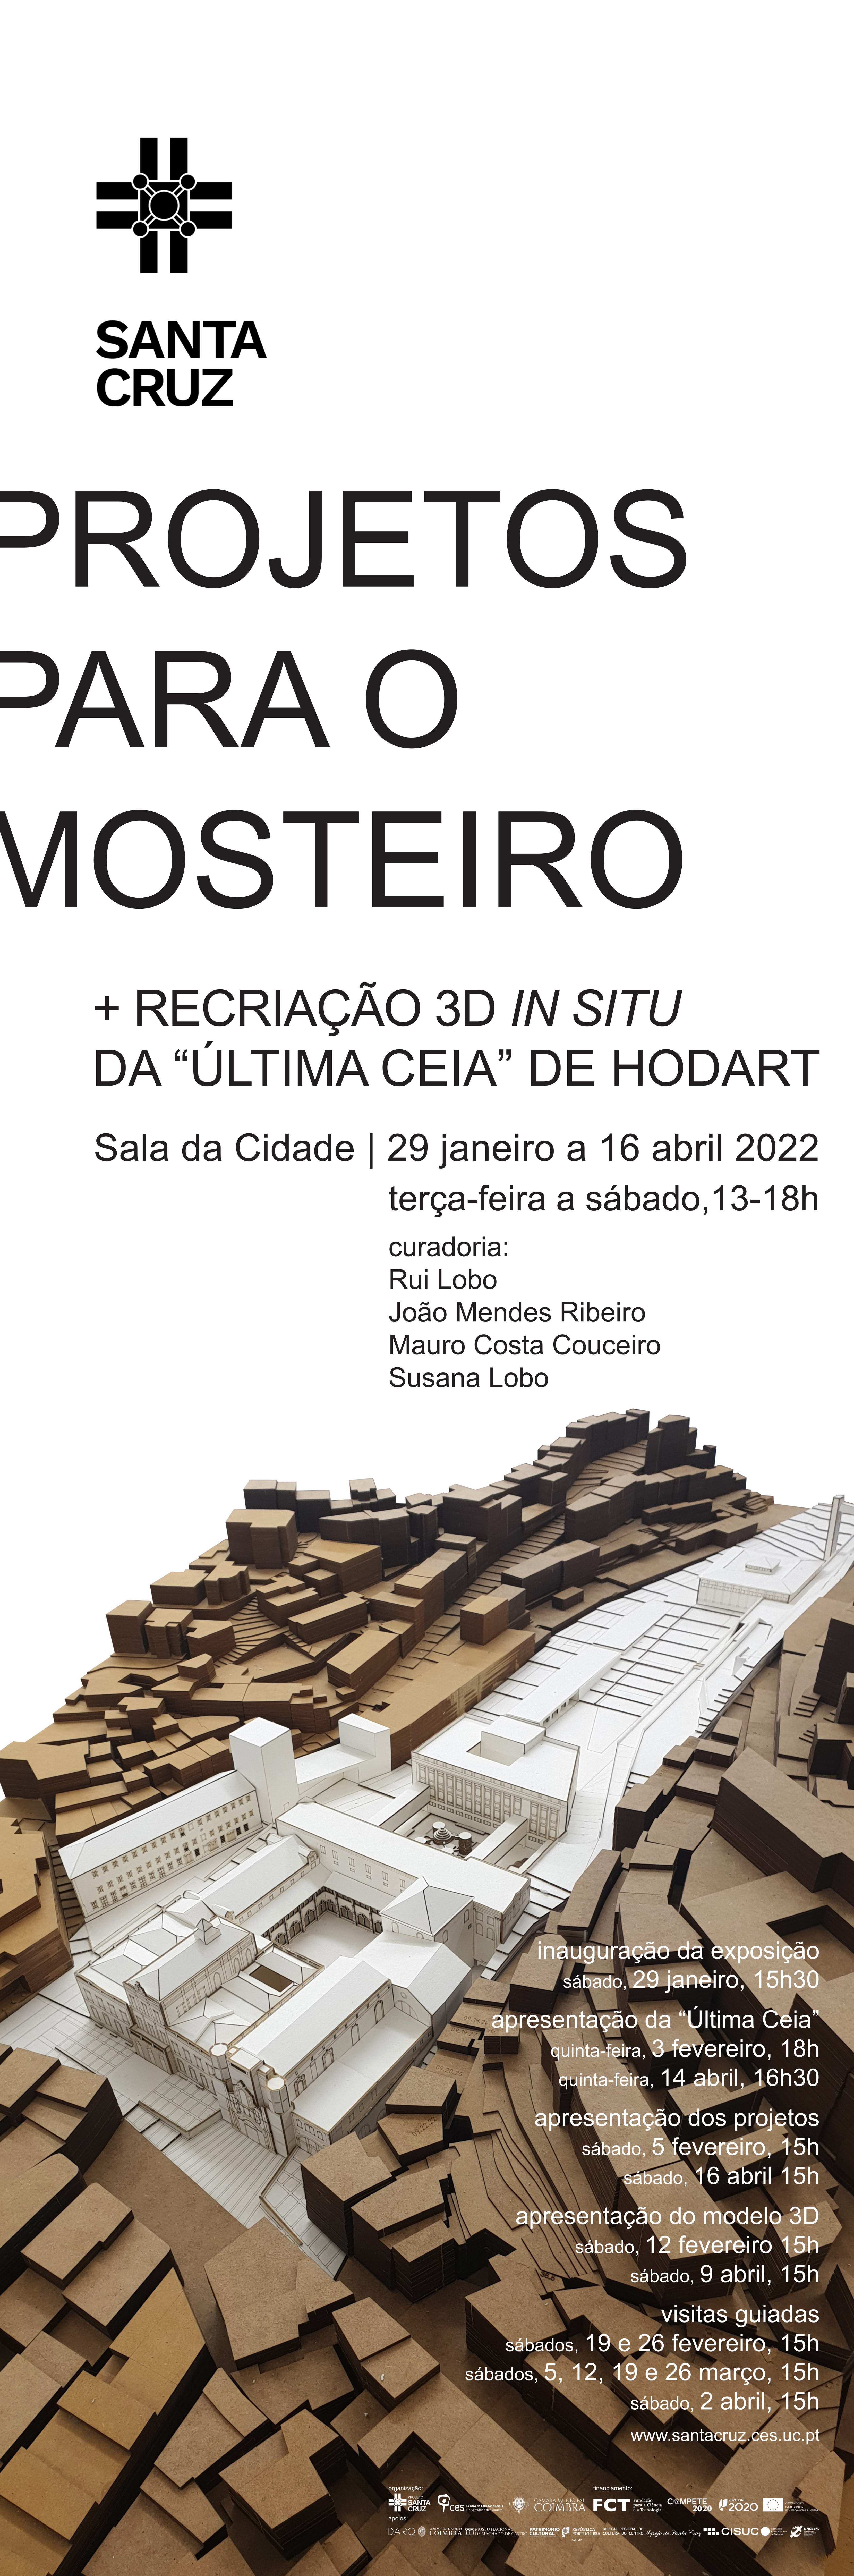 Projetos para o Mosteiro de Santa Cruz de Coimbra + Recriação 3D <em>in situ</em> da «Última Ceia» de Hodart<span id="edit_36897"><script>$(function() { $('#edit_36897').load( "/myces/user/editobj.php?tipo=evento&id=36897" ); });</script></span>